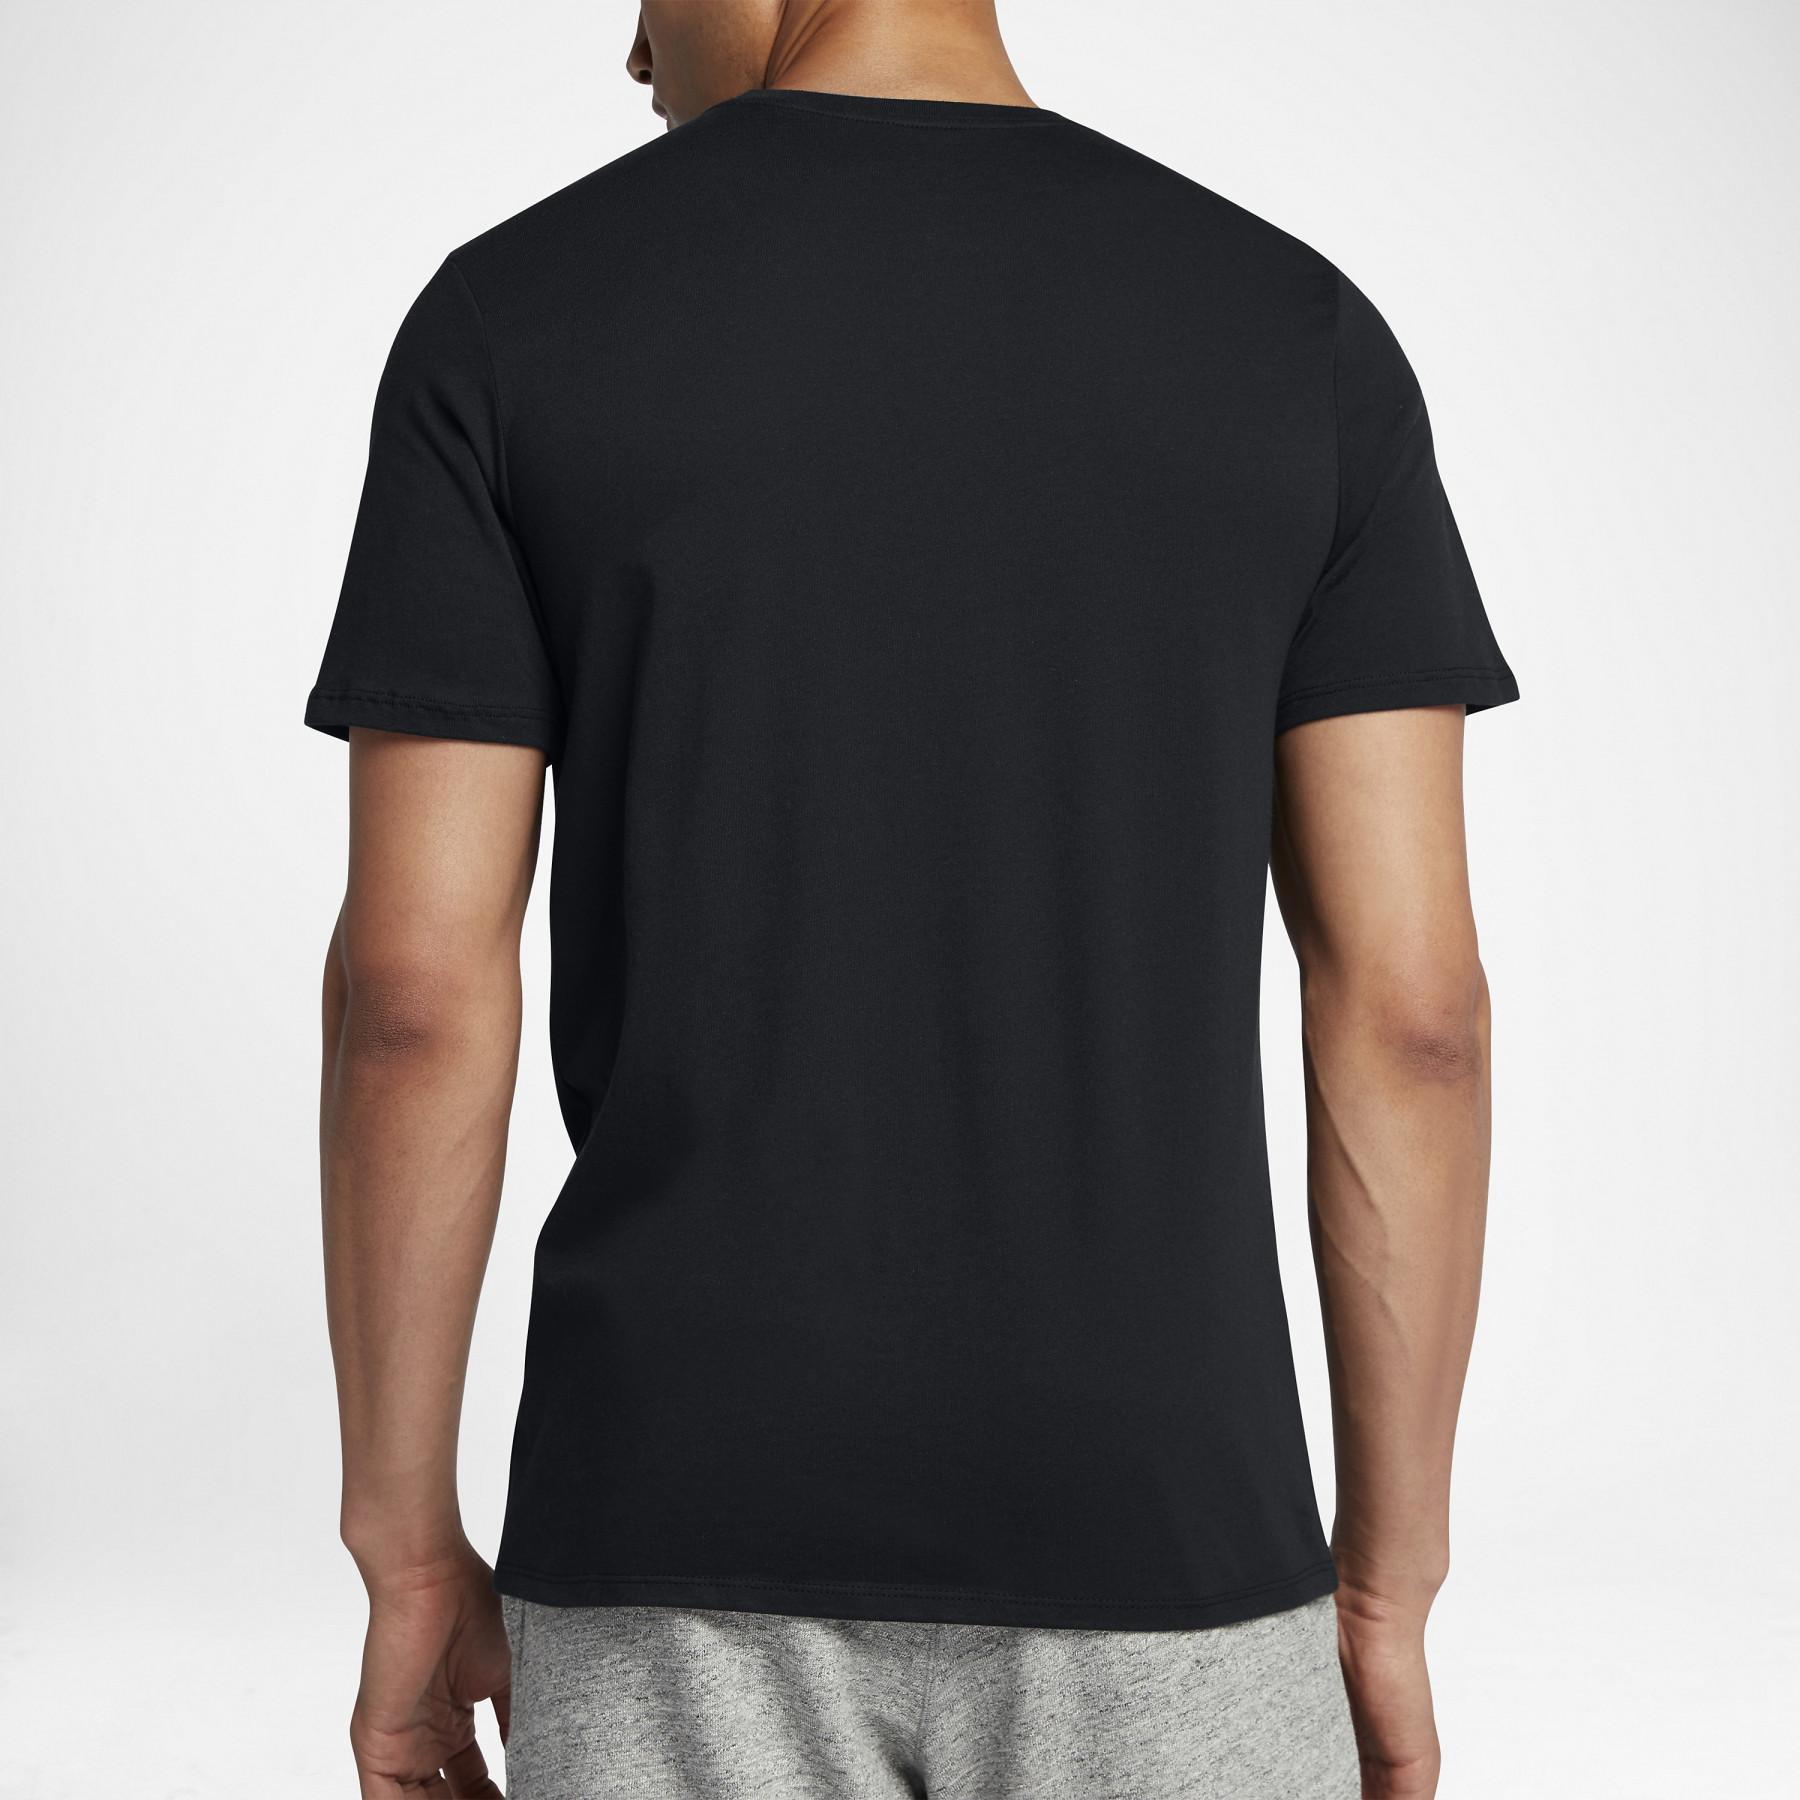 T-shirt Nike Sportwear